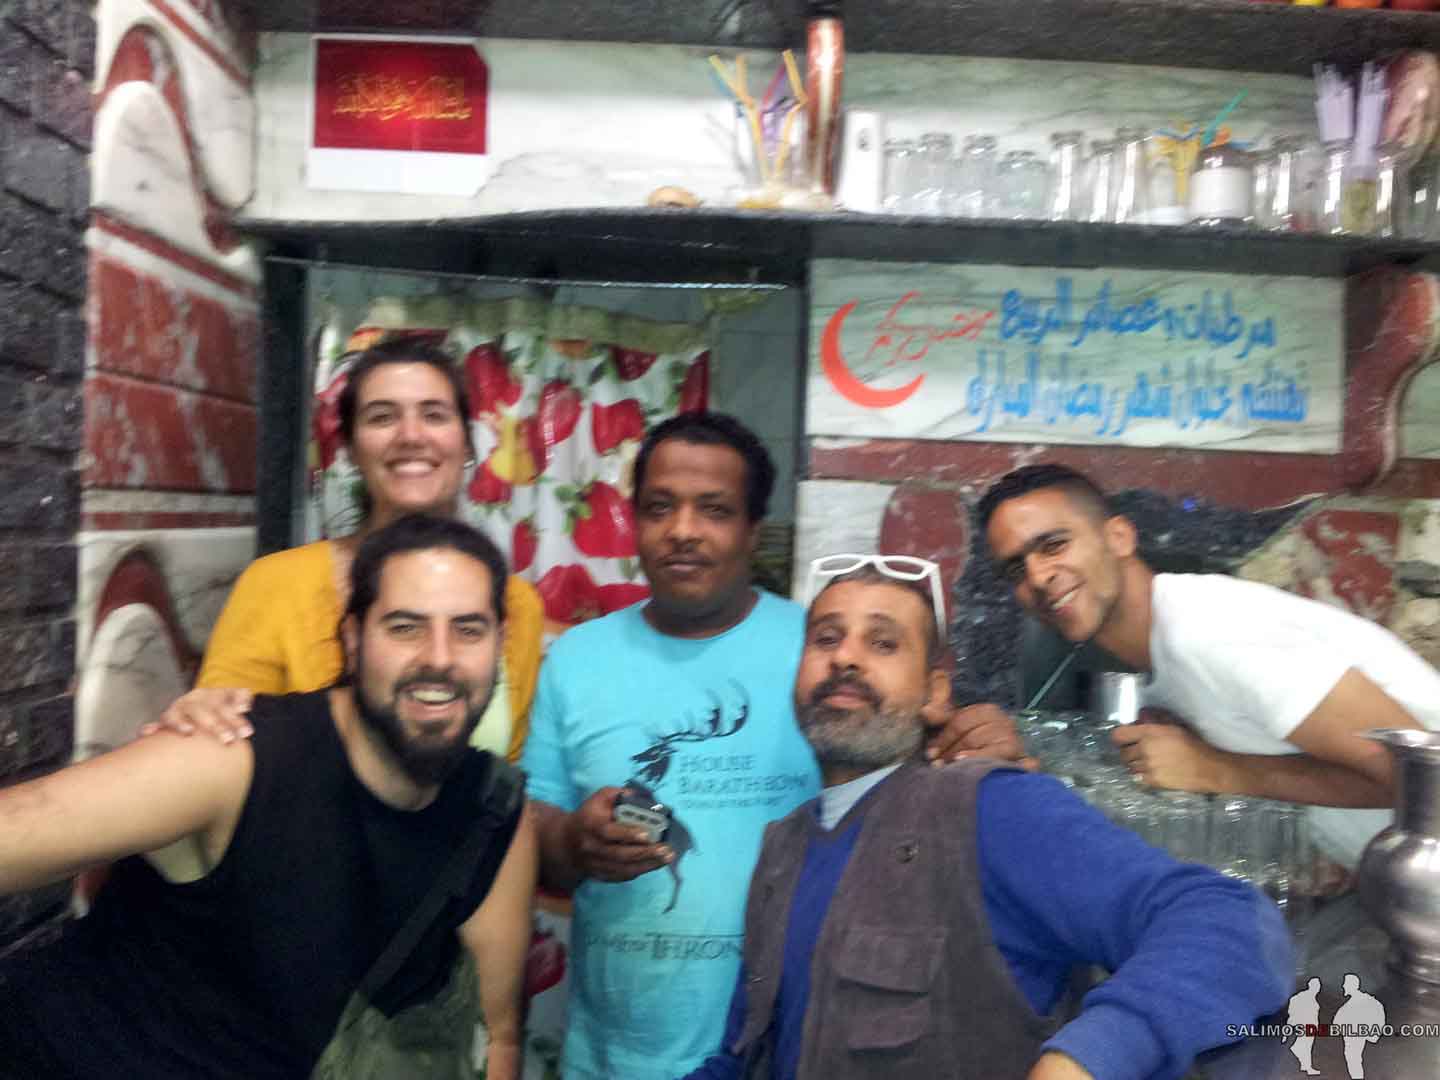 DIARIO Tres semanas en EGIPTO por libre Katz, Abdul y Saioa, Aswan